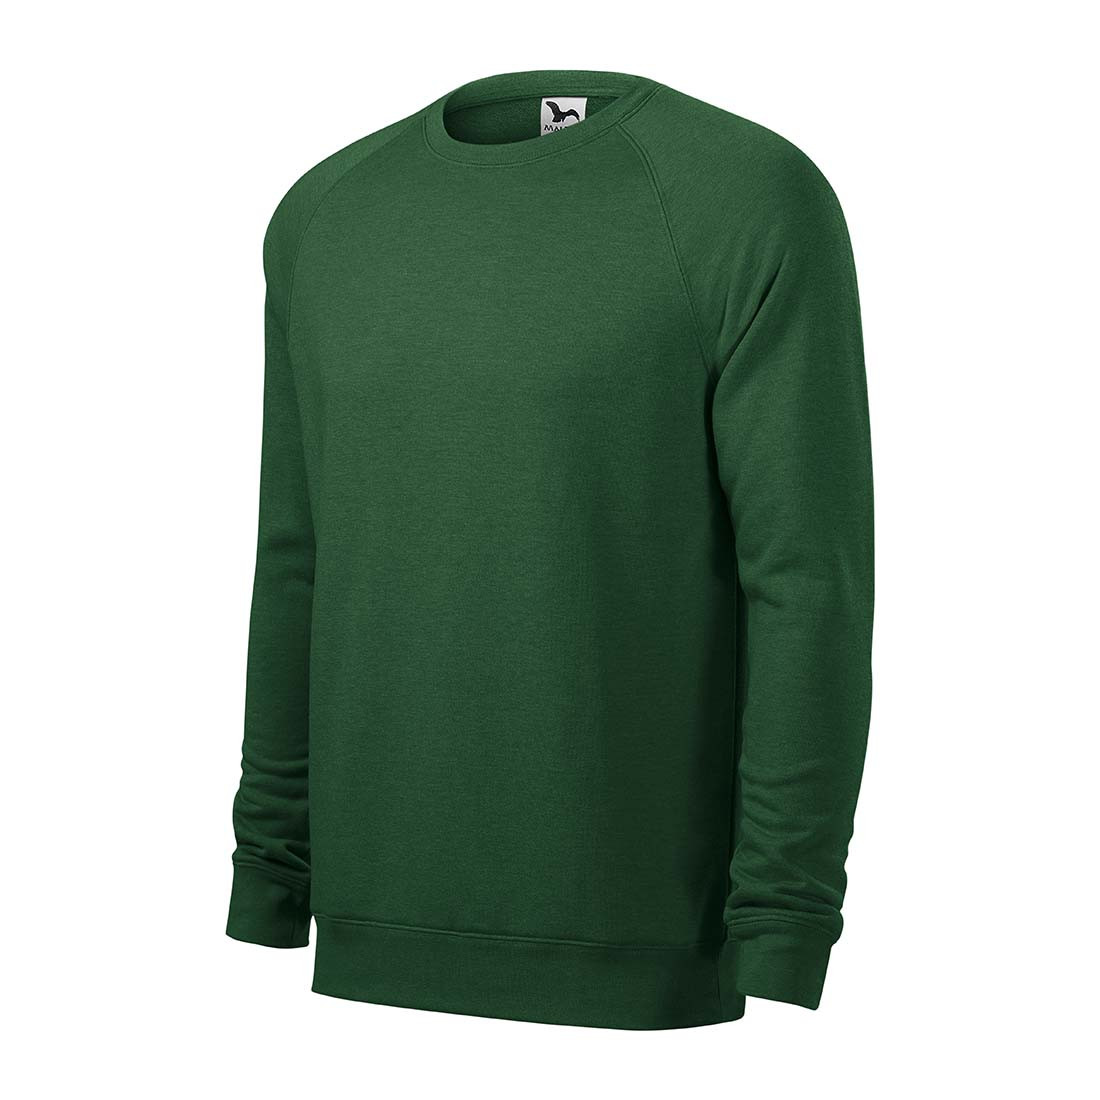 Sweatshirt MERGE pour hommes - Les vêtements de protection